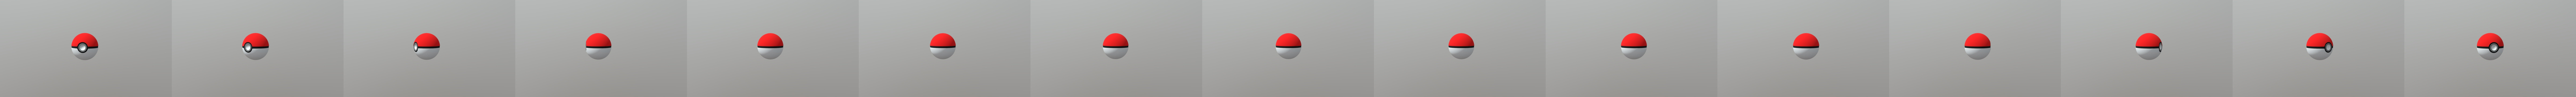 Pokeball 3D Illustration download in PNG, OBJ or Blend format